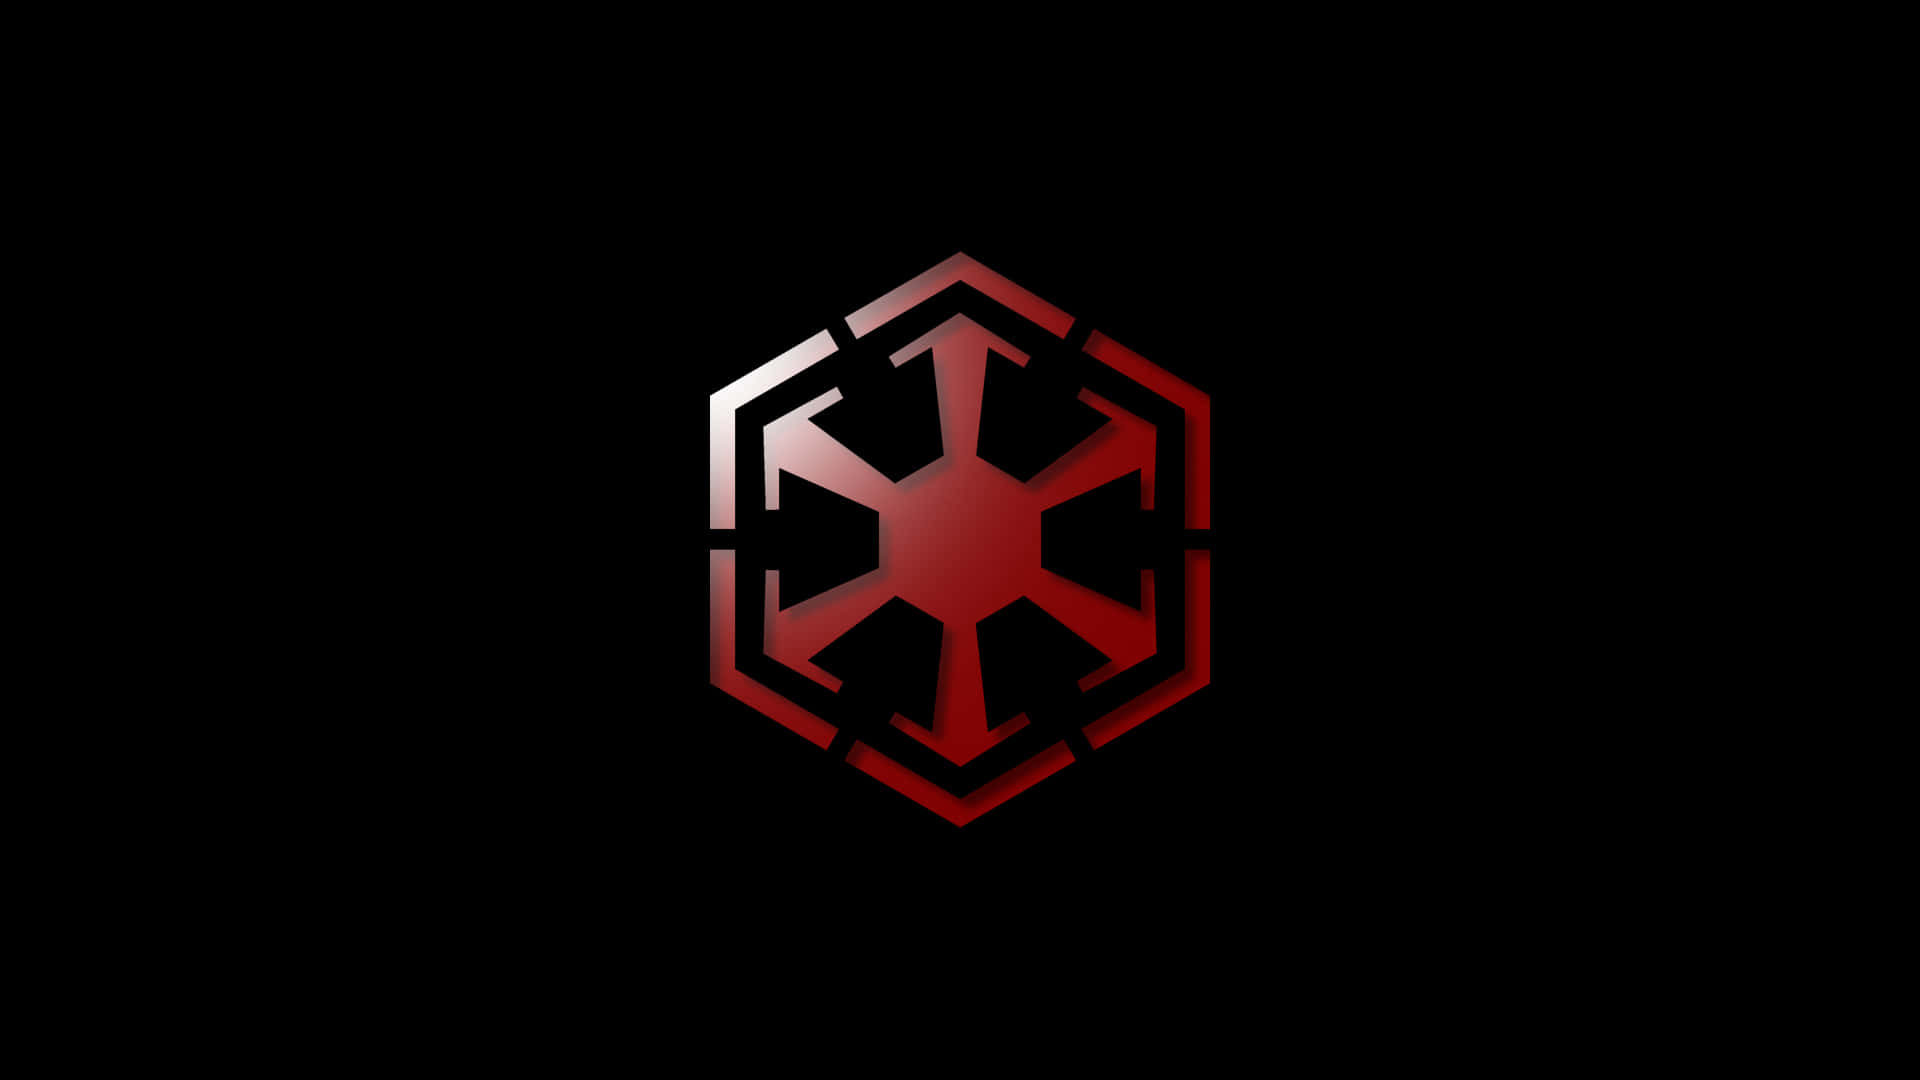 Star Wars Empire logoudtryk skaber den perfekte udtryksfulde baggrund. Wallpaper